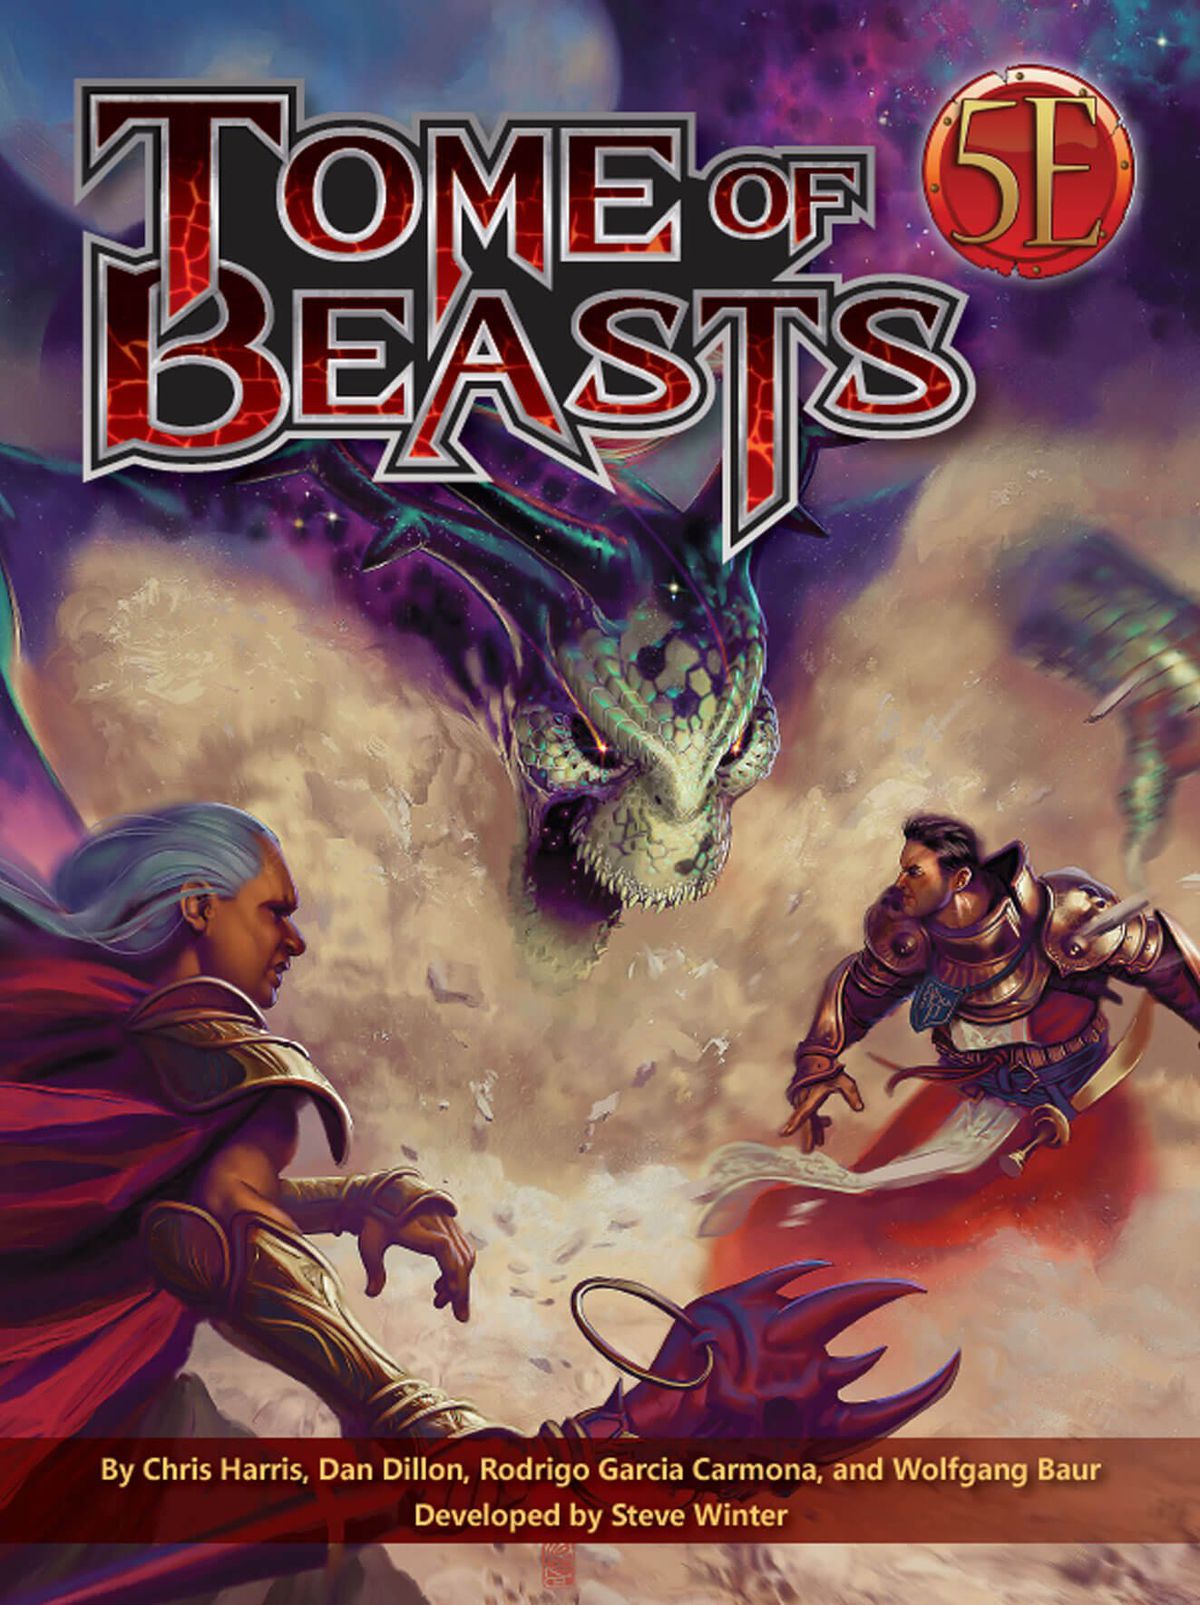 Un mostro scheletrico con le corna tossisce una nuvola polverosa e nociva mentre gli avventurieri si disperdono nella copertina ufficiale di Tome of Beasts.